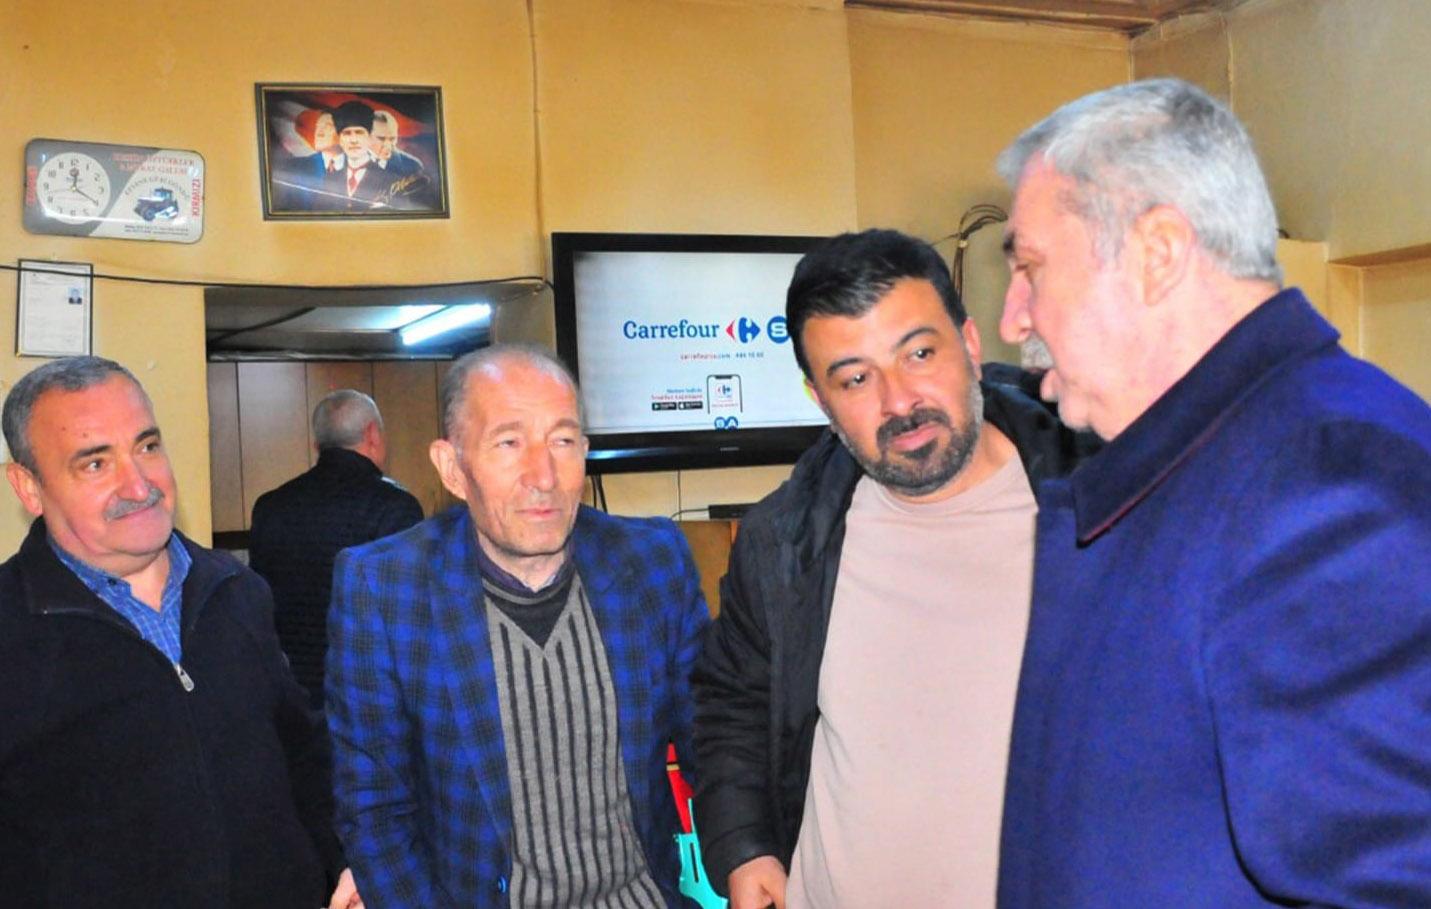 İYİ Parti Kırıkkale Milletvekili Adayı Bülent Şükrü Altınışık Keskin’de Ziyaretlerde Bulundu - Kırıkkale Haber, Son Dakika Kırıkkale Haberleri